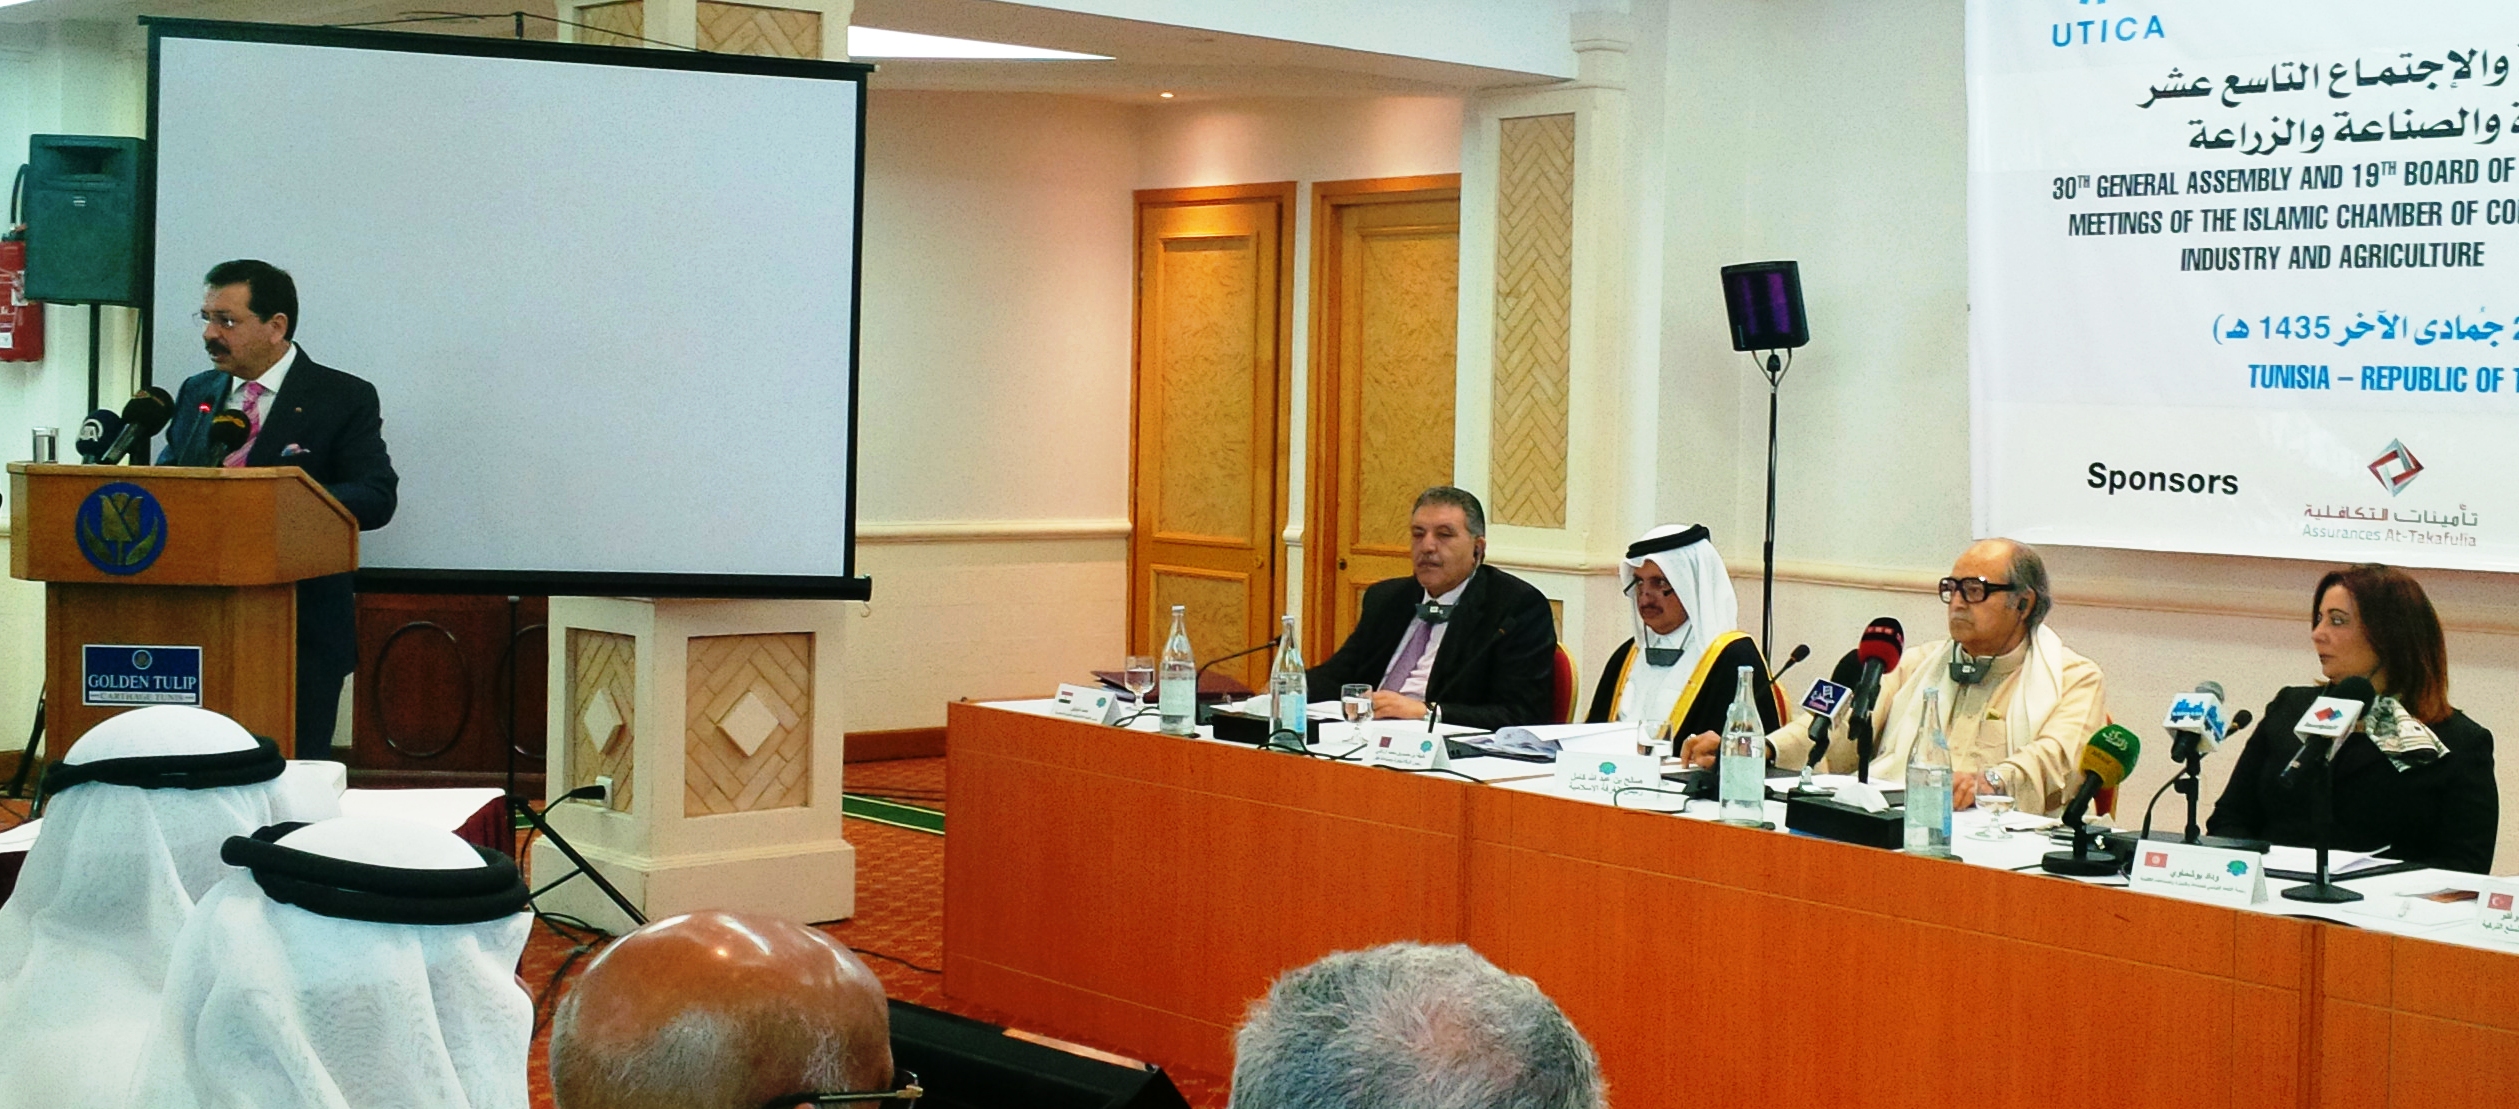 İslam Ticaret ve Sanayi Odası 30. Genel Kurul Toplantısı